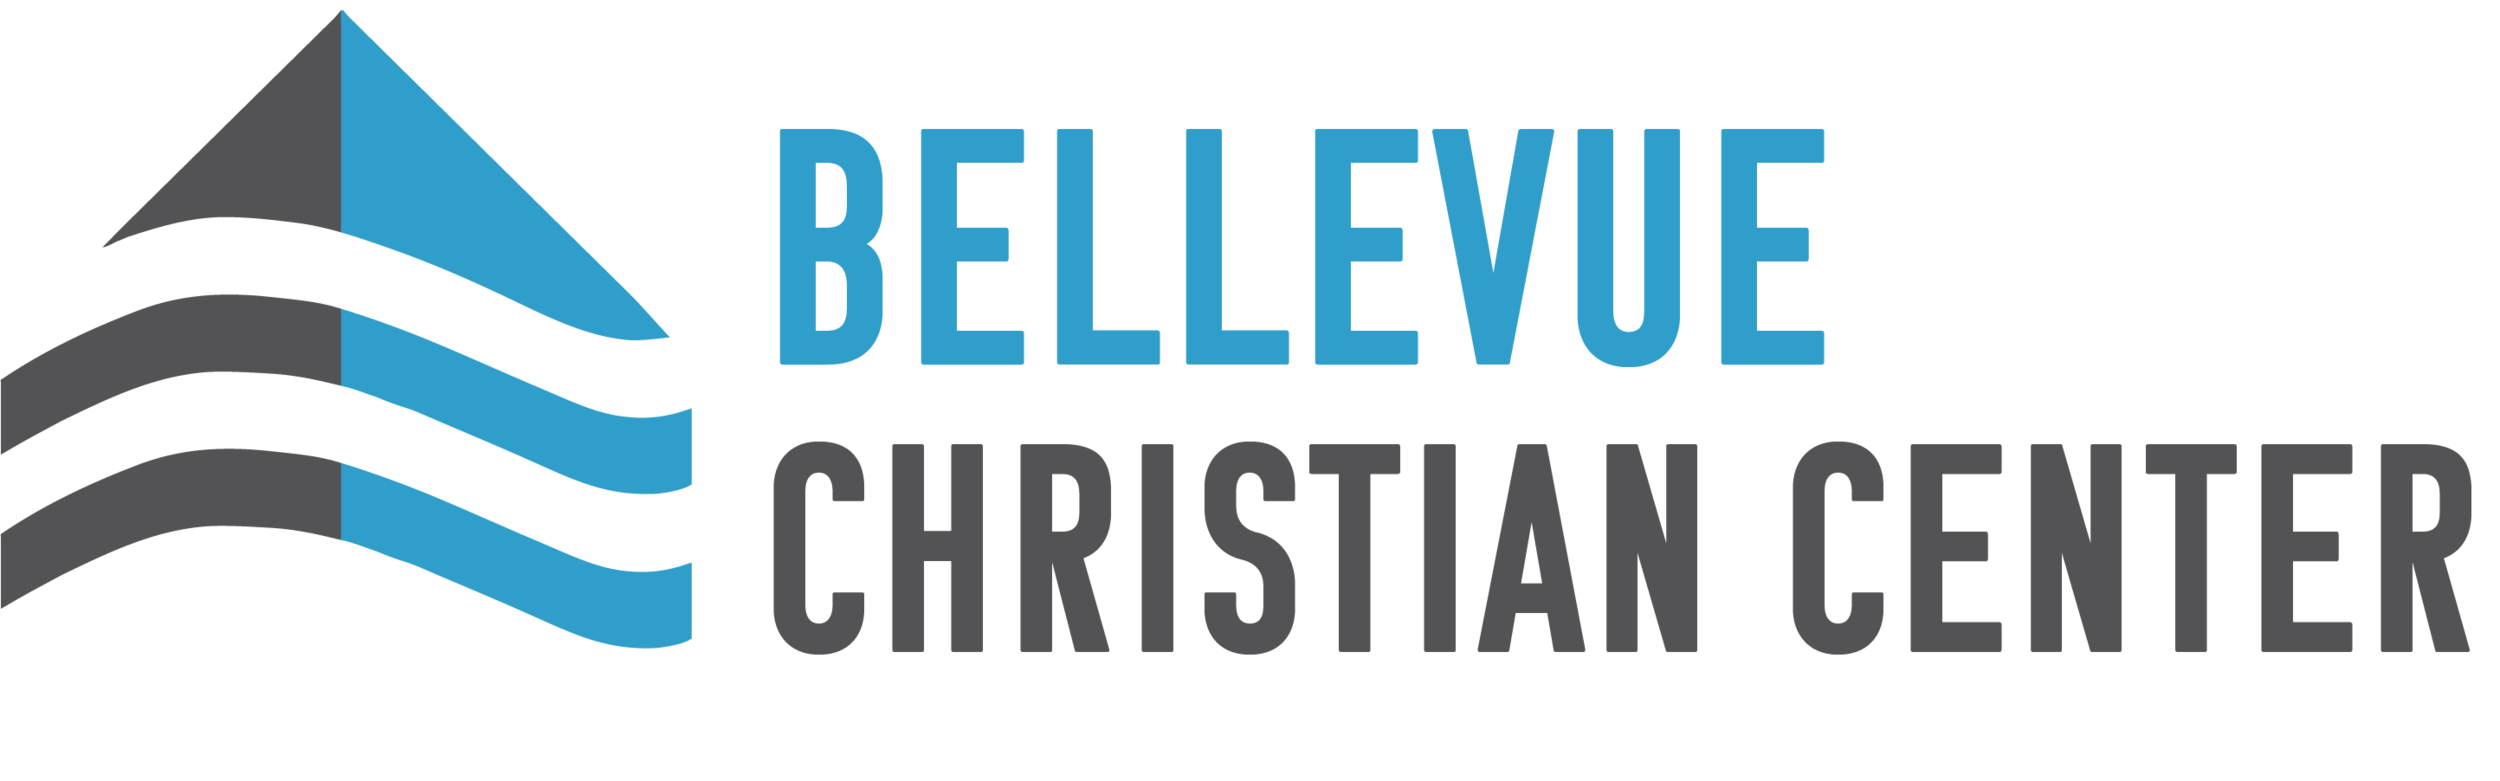 Bellevue Christian Center